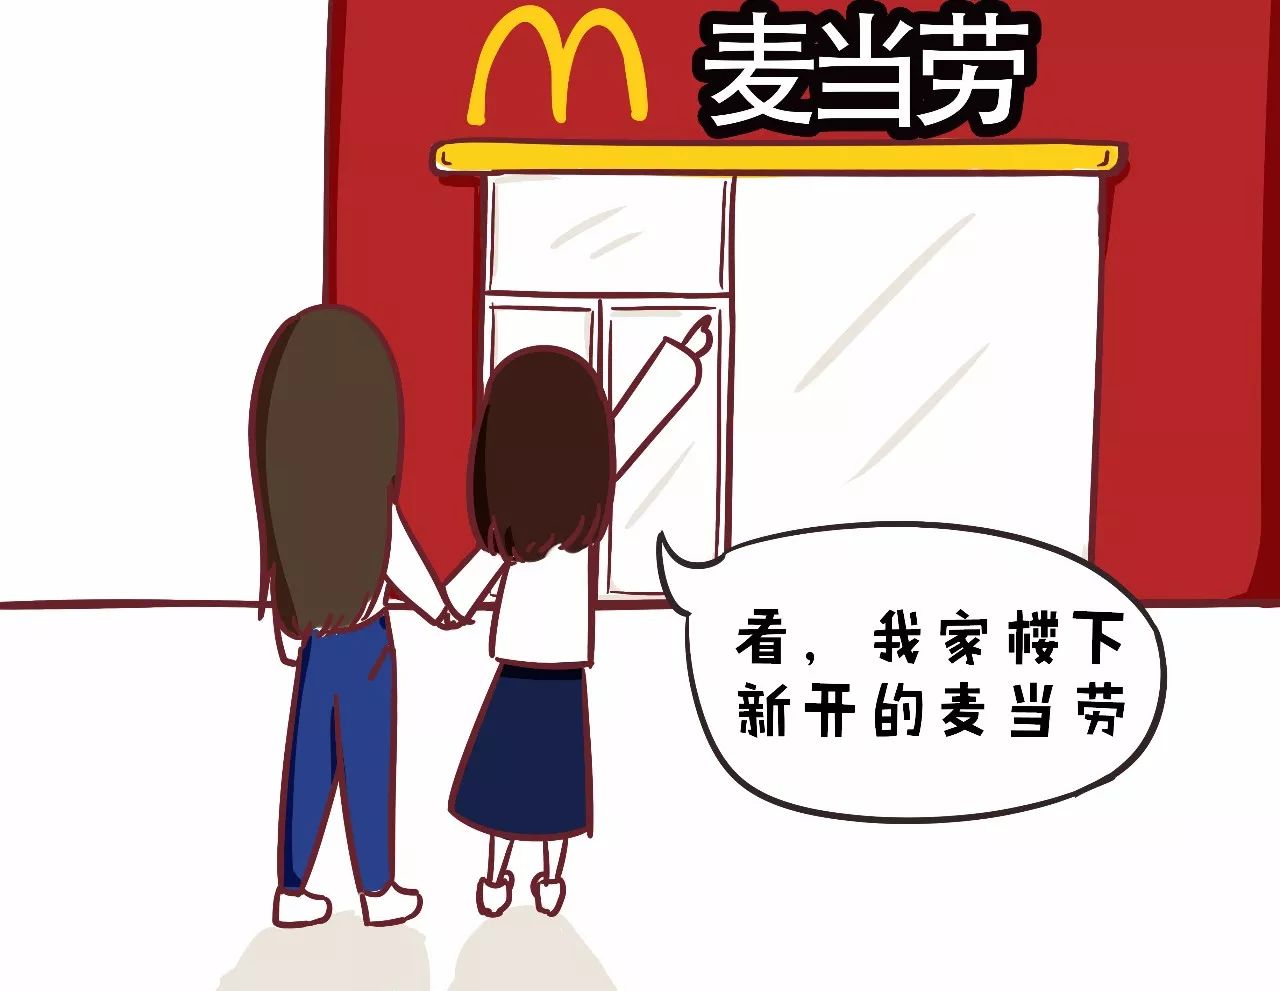 未来五年,中国内地将新增约2000家麦当劳餐厅.